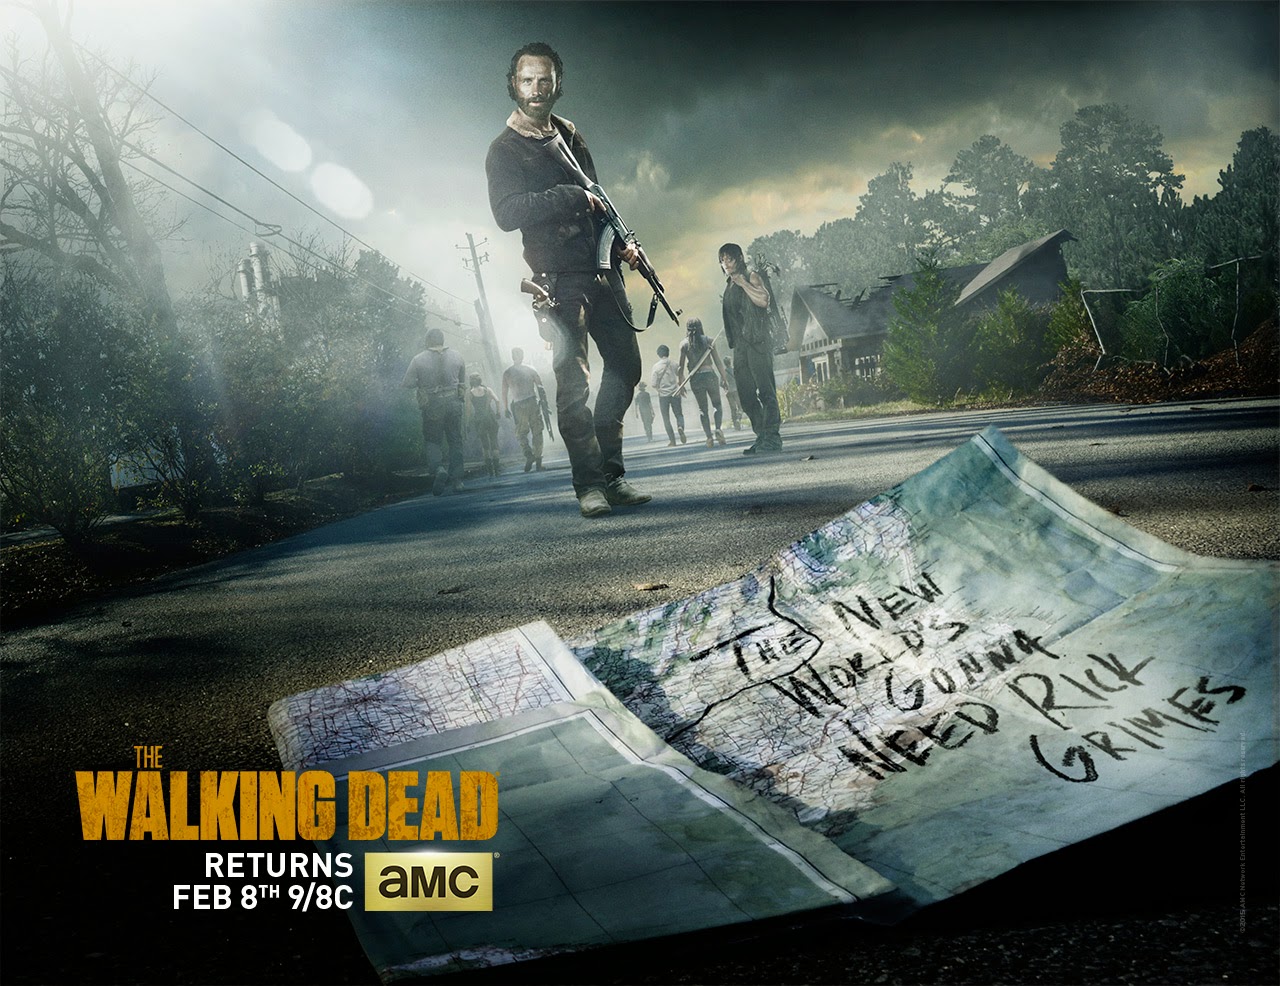 The Walking Dead Season 5 Midseason Premiere Poster